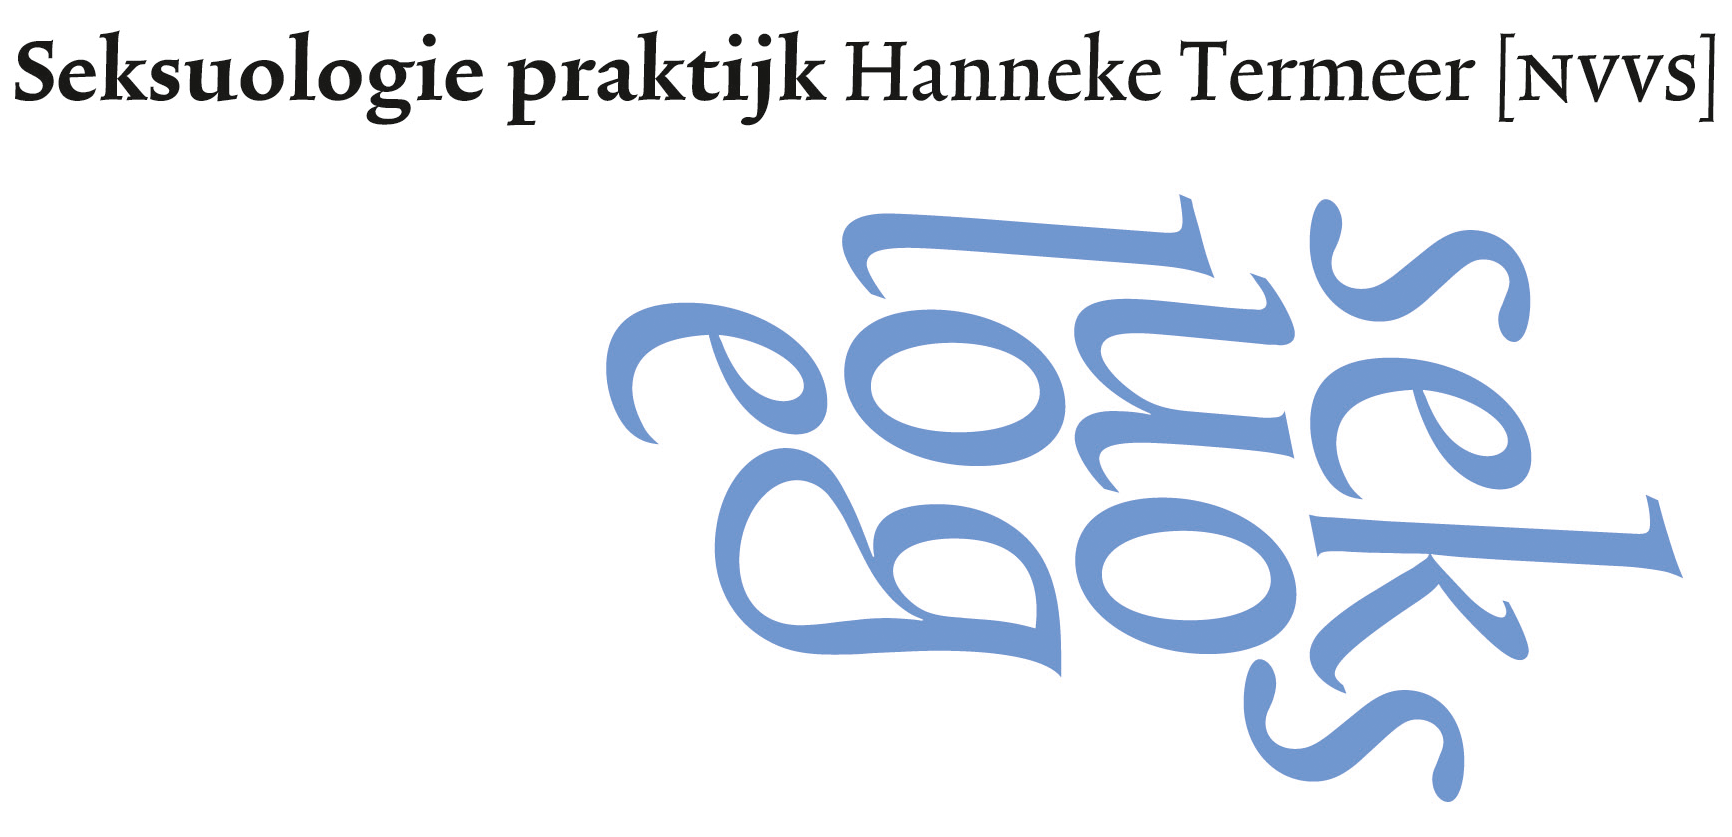 Hanneke Termeer